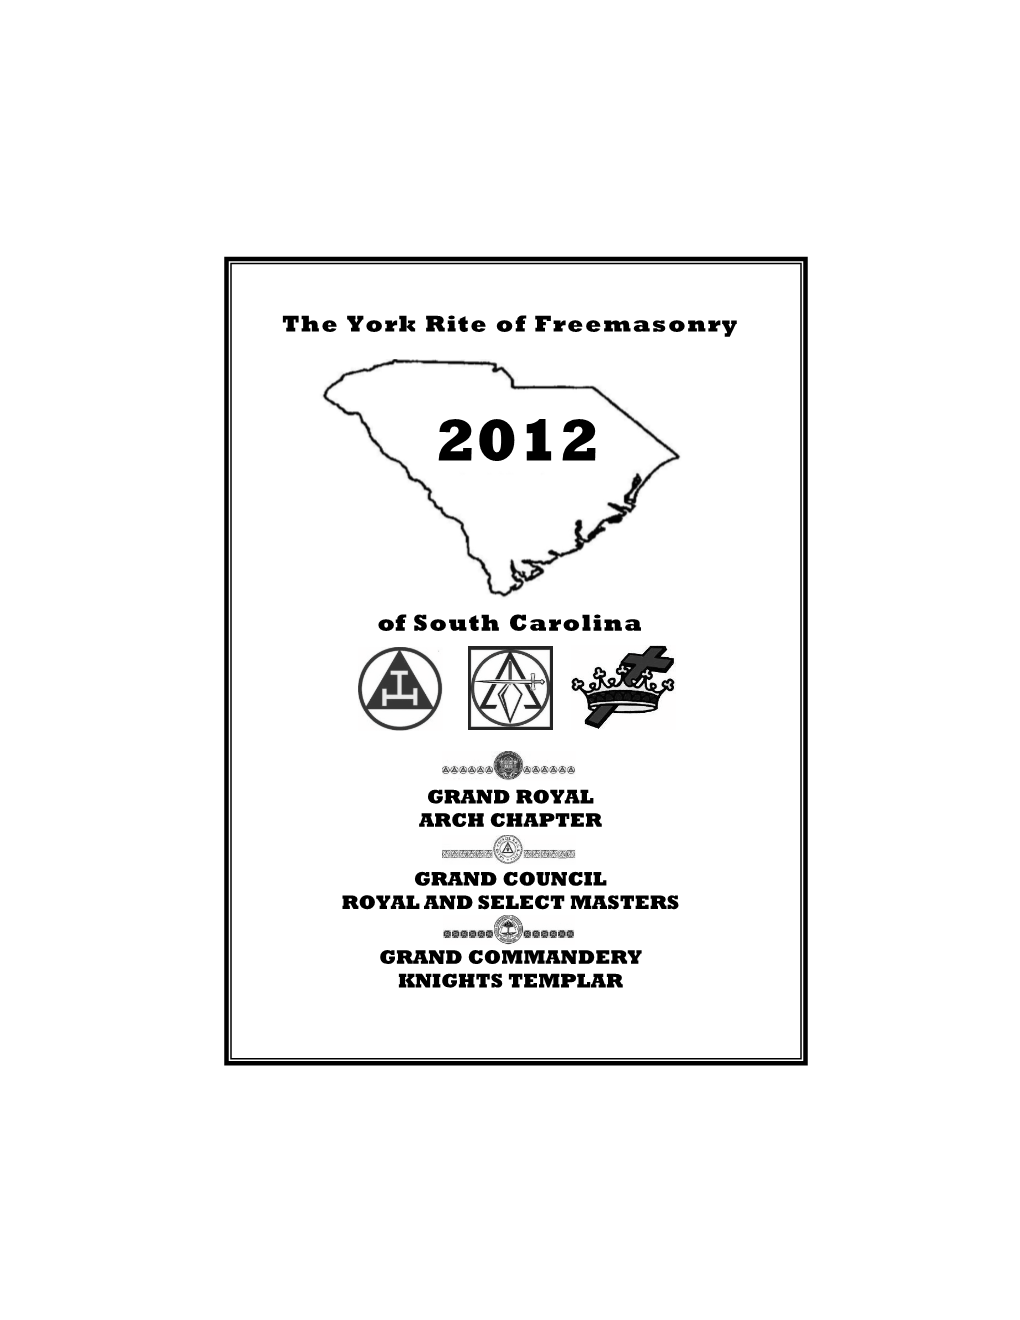 The York Rite of Freemasonry of South Carolina